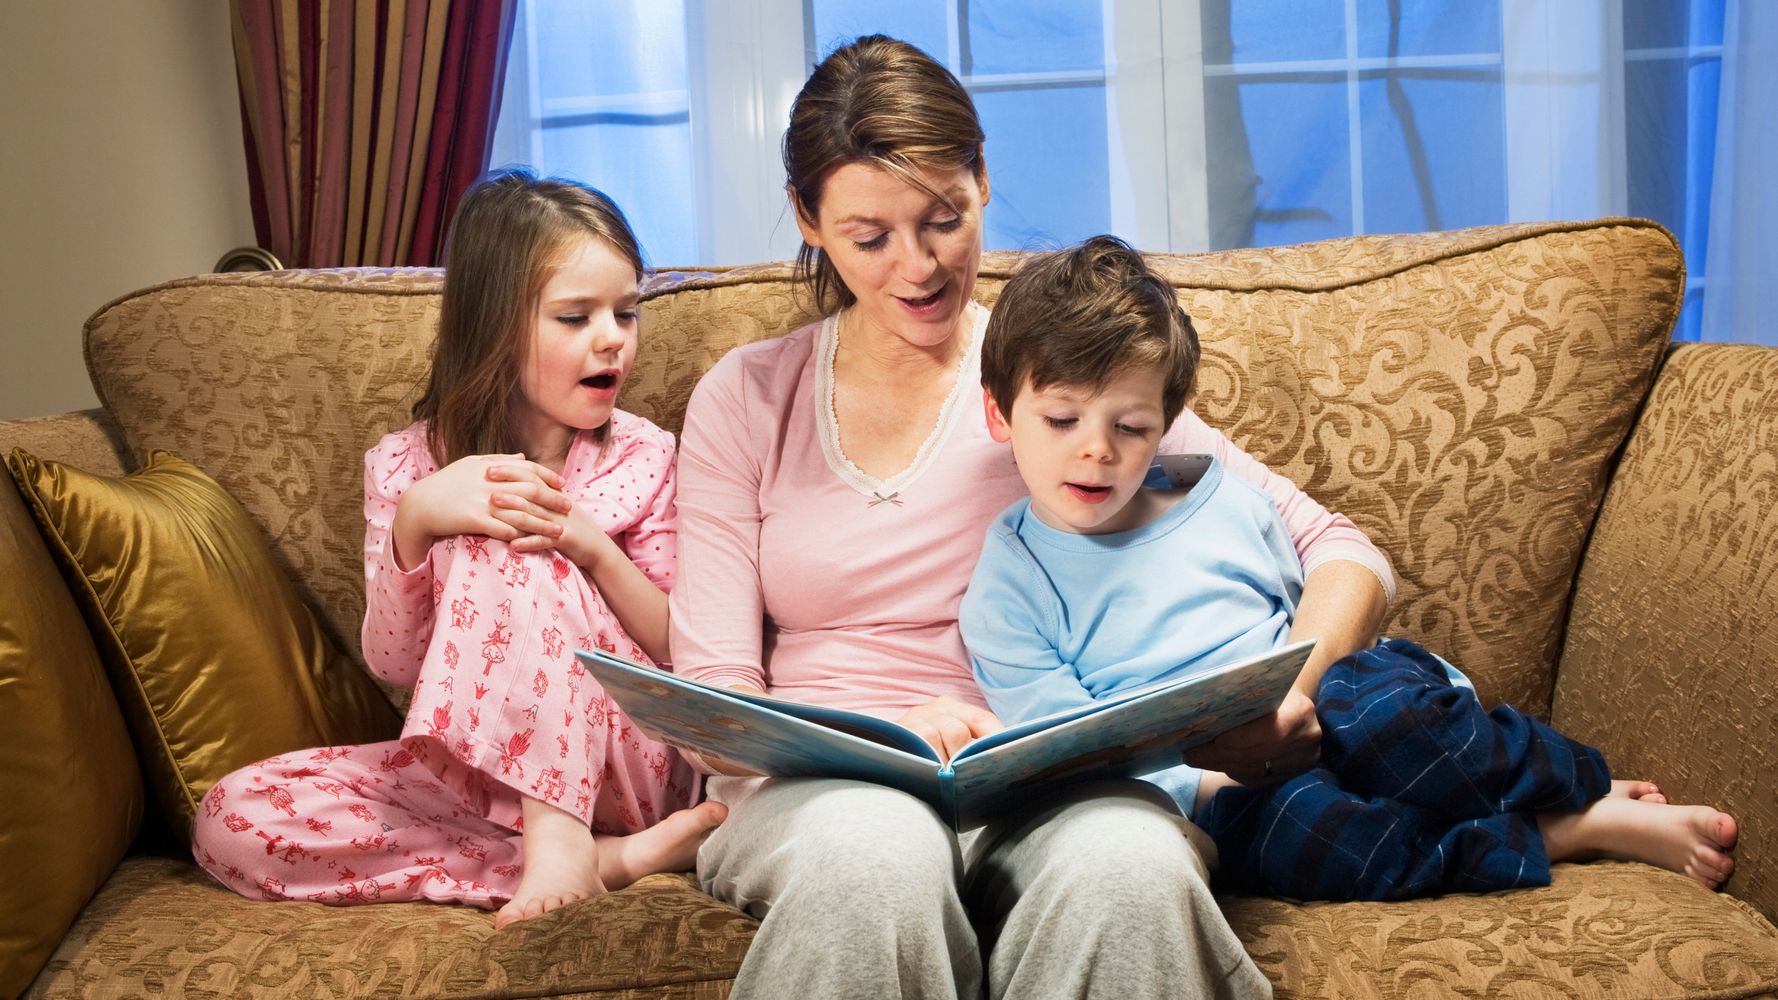 Читать мама с другом. Мама читает ребенку. Родители читают детям. Мама читает книгу ребенку. Родители читают книги.